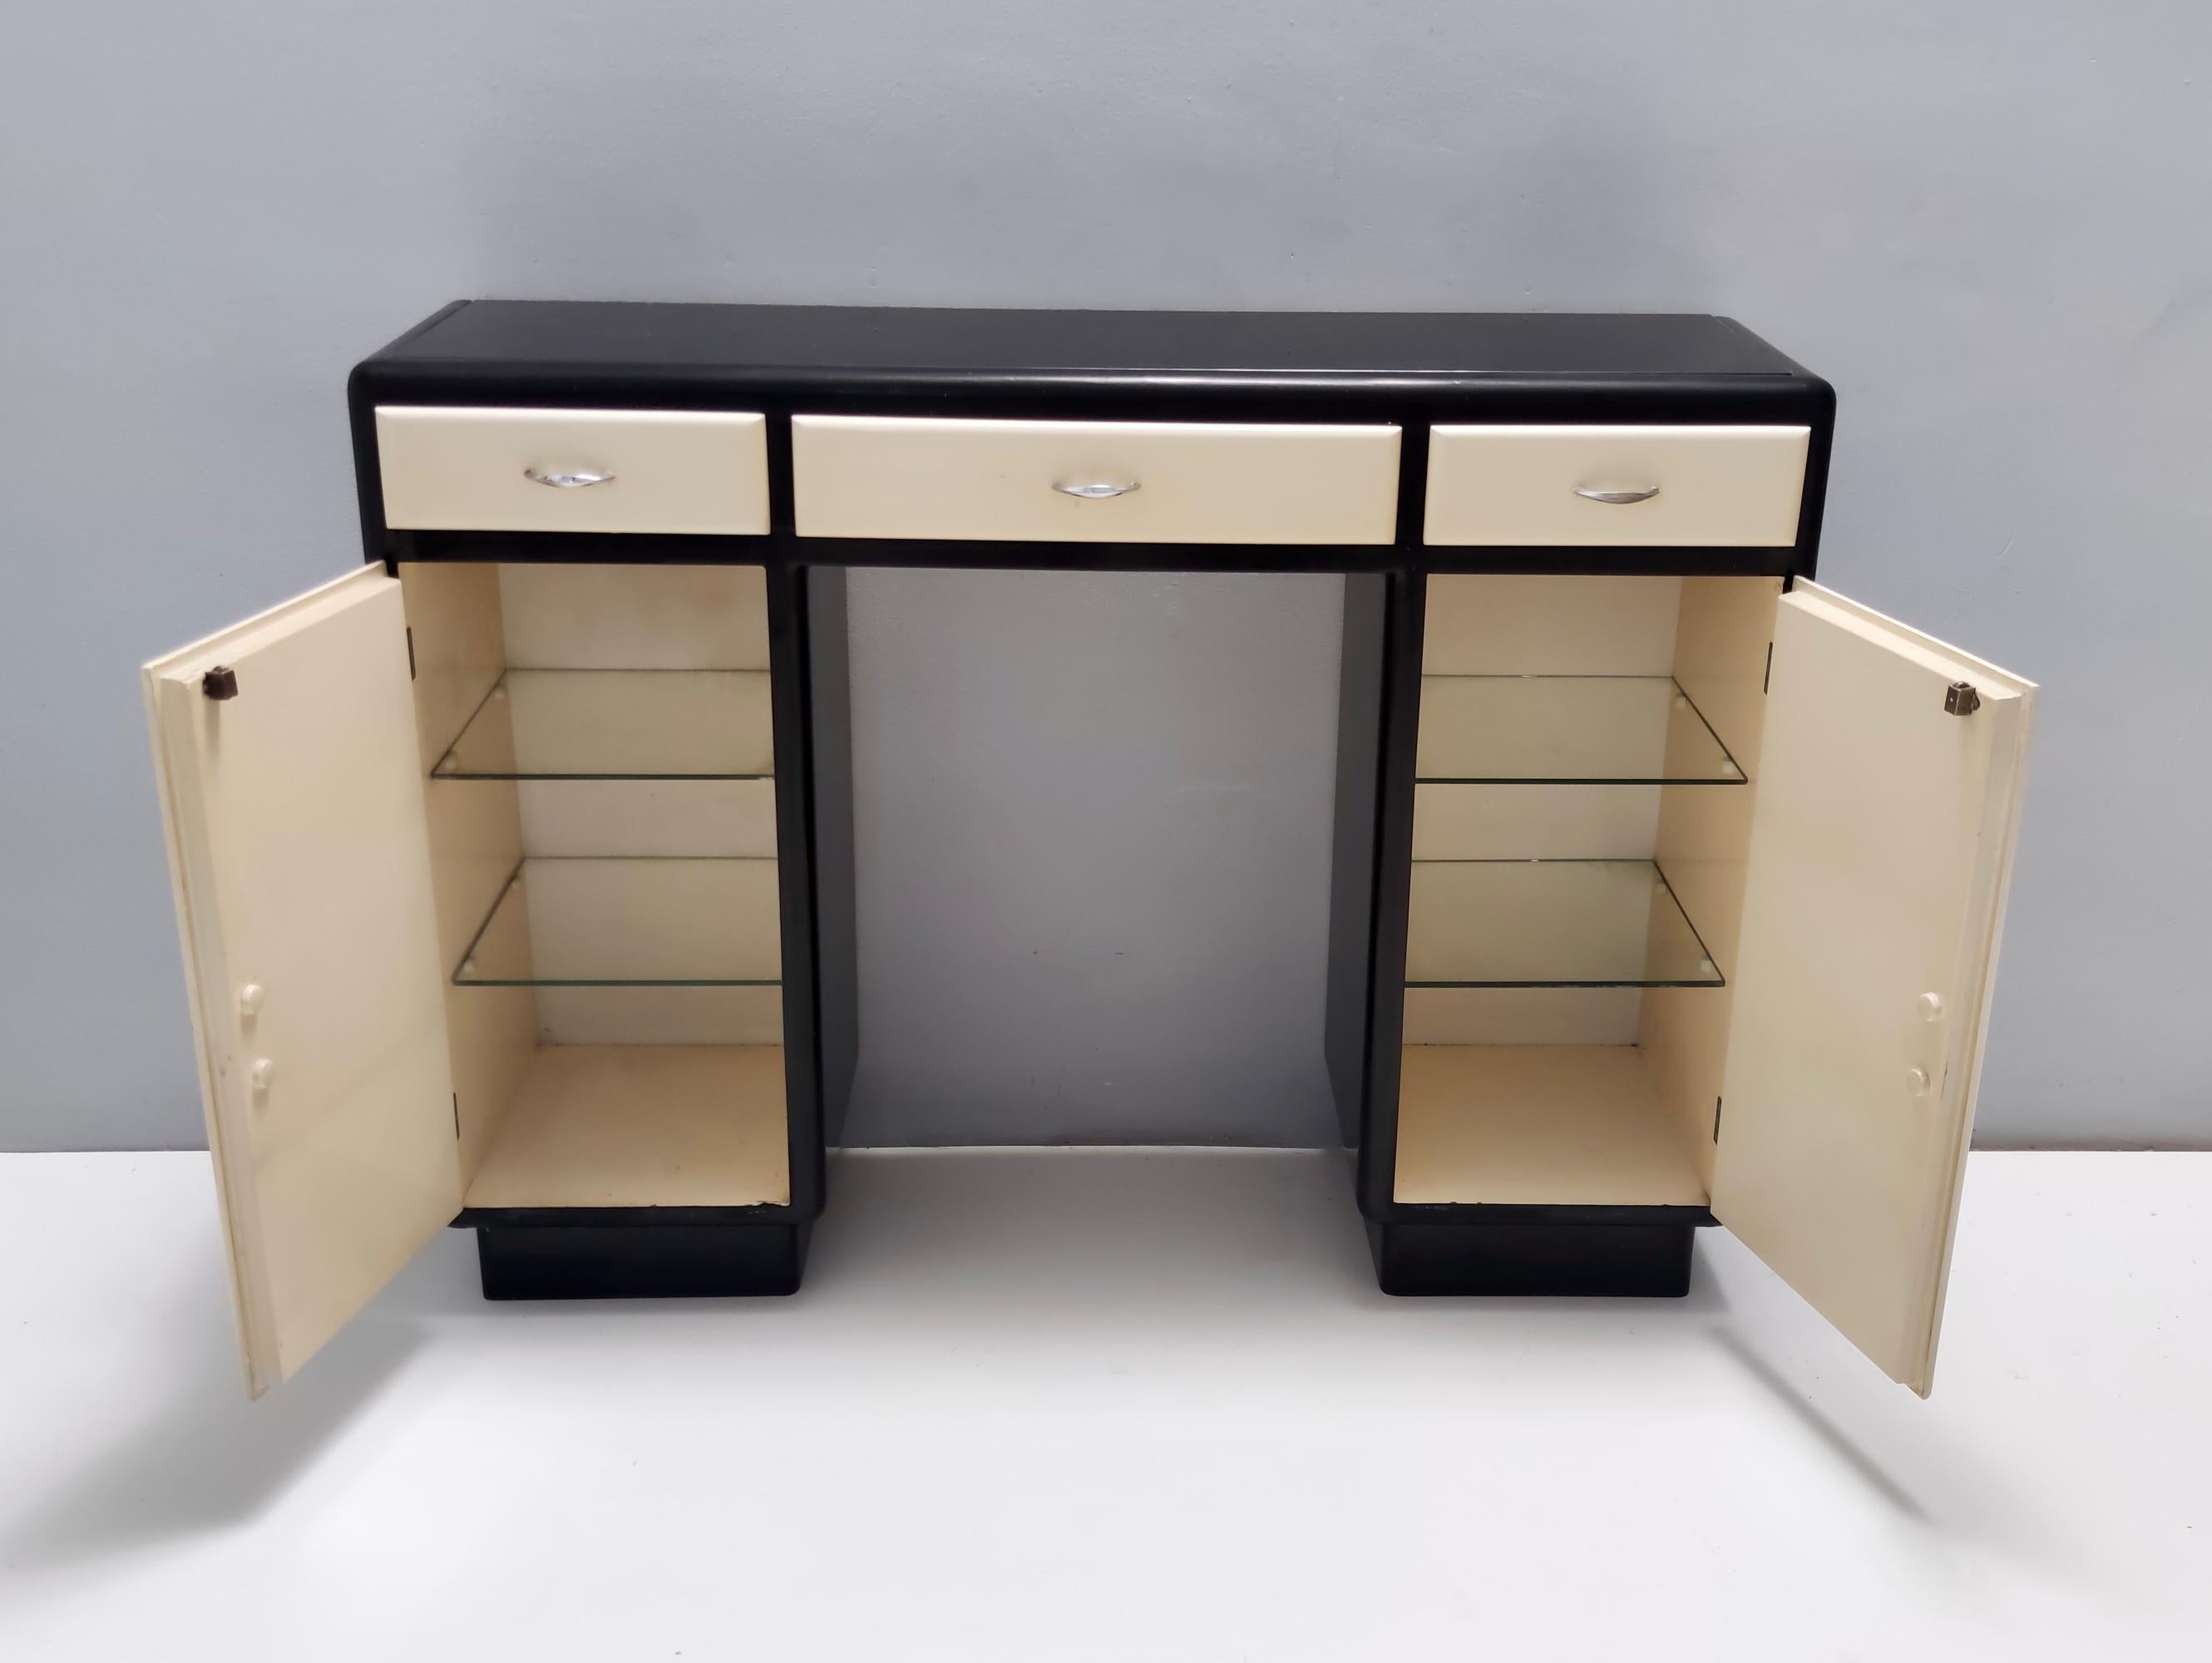 Fabriqué en Italie, années 1940.
Cette console / meuble d'entrée est réalisée en hêtre laqué, avec un plateau en verre opalin noir et présente des poignées en laiton nickelé . 
Il s'agit d'une pièce d'époque, qui peut donc présenter de légères